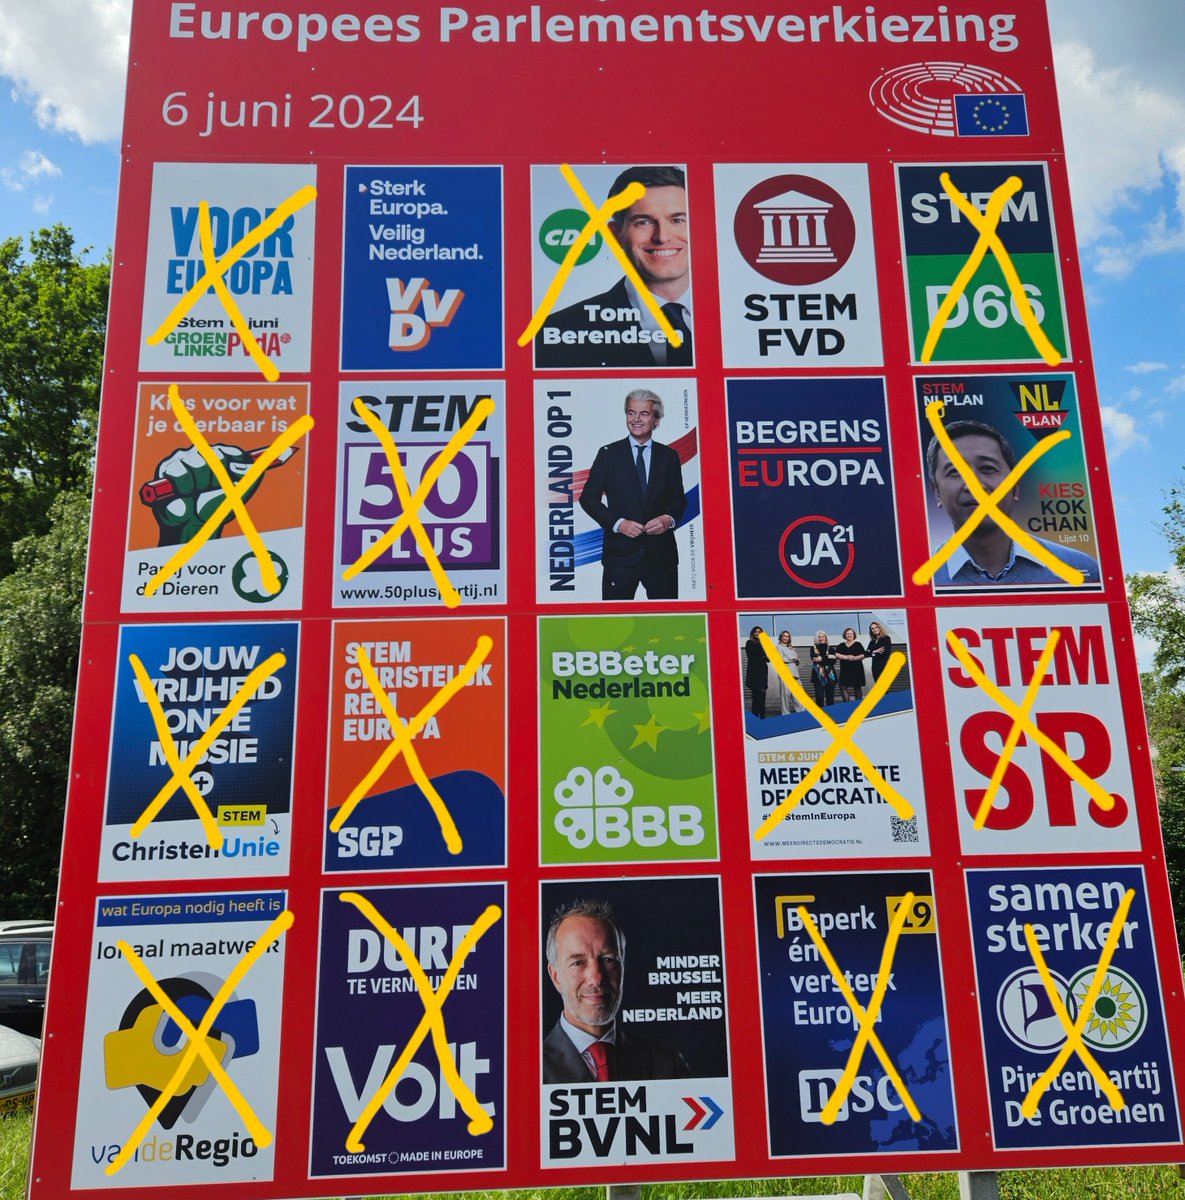 #EP24  willen wij NL af van #asielcrises en illegale #migranten en #vluchtelingen dan blijft er weinig over om te kiezen dan..😉⤵️
Stem op partijen die VOOR NL volk zijn en niet tassendrager vn EU willen zn. #formatiedebat #premier #vandaaginside #Op1 #Nieuwsuur #WNL #Timmermans